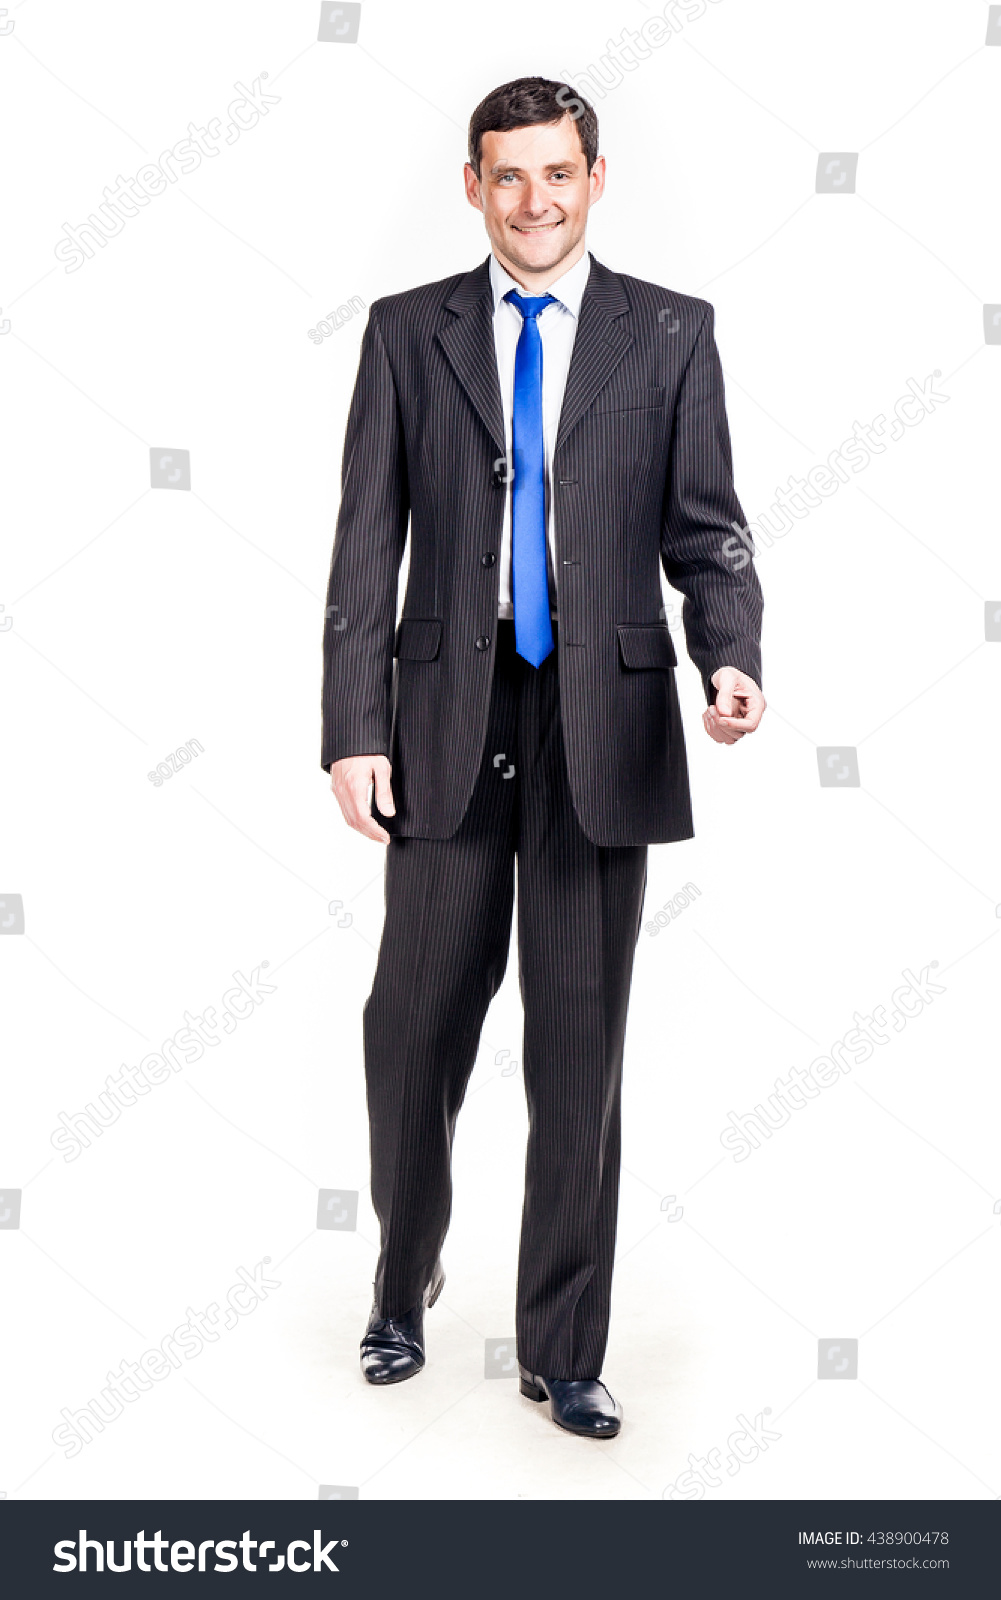 tie color white shirt black suit